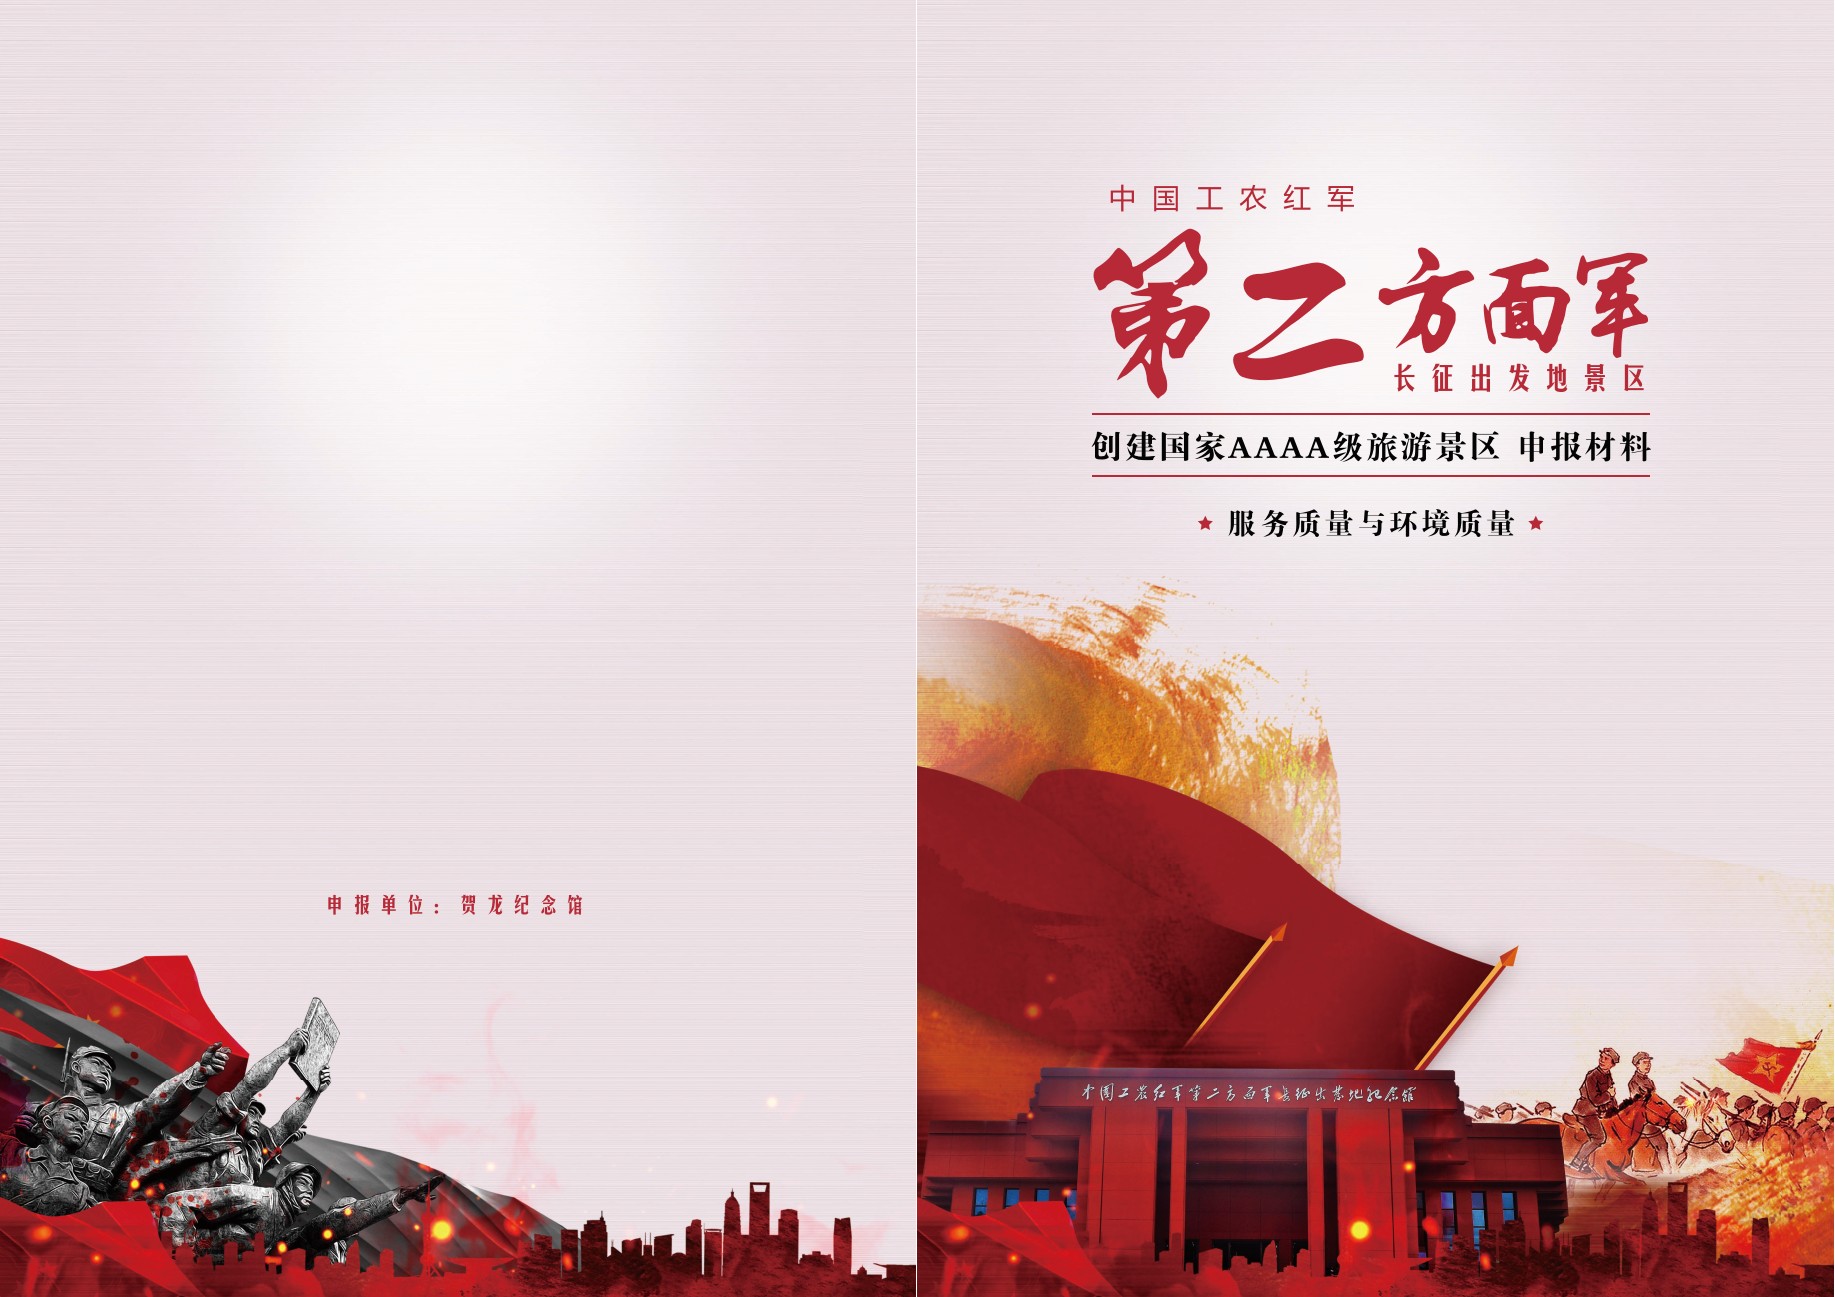 中国工农红军第二方面军长征出发地景区创建国家4A级旅游景区全程技术服务